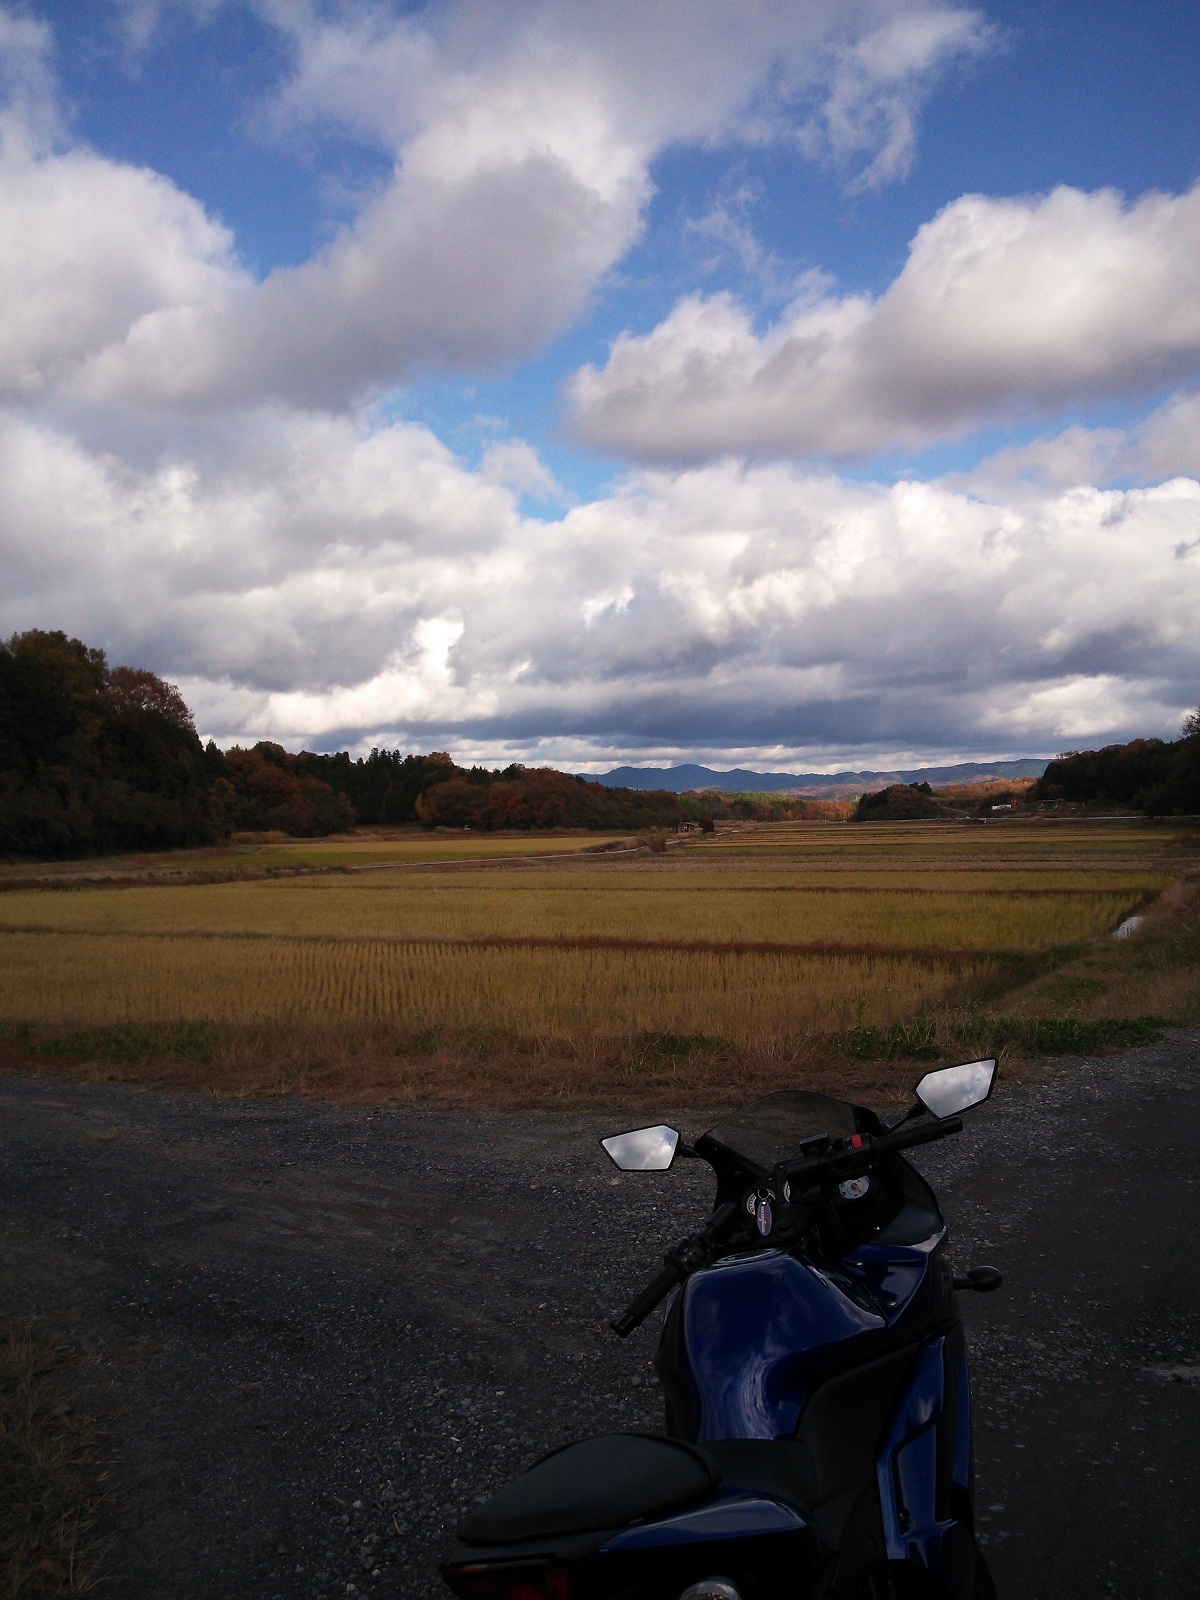 治田インターで降り、青山高原を目指しました。道中に良いラーツース